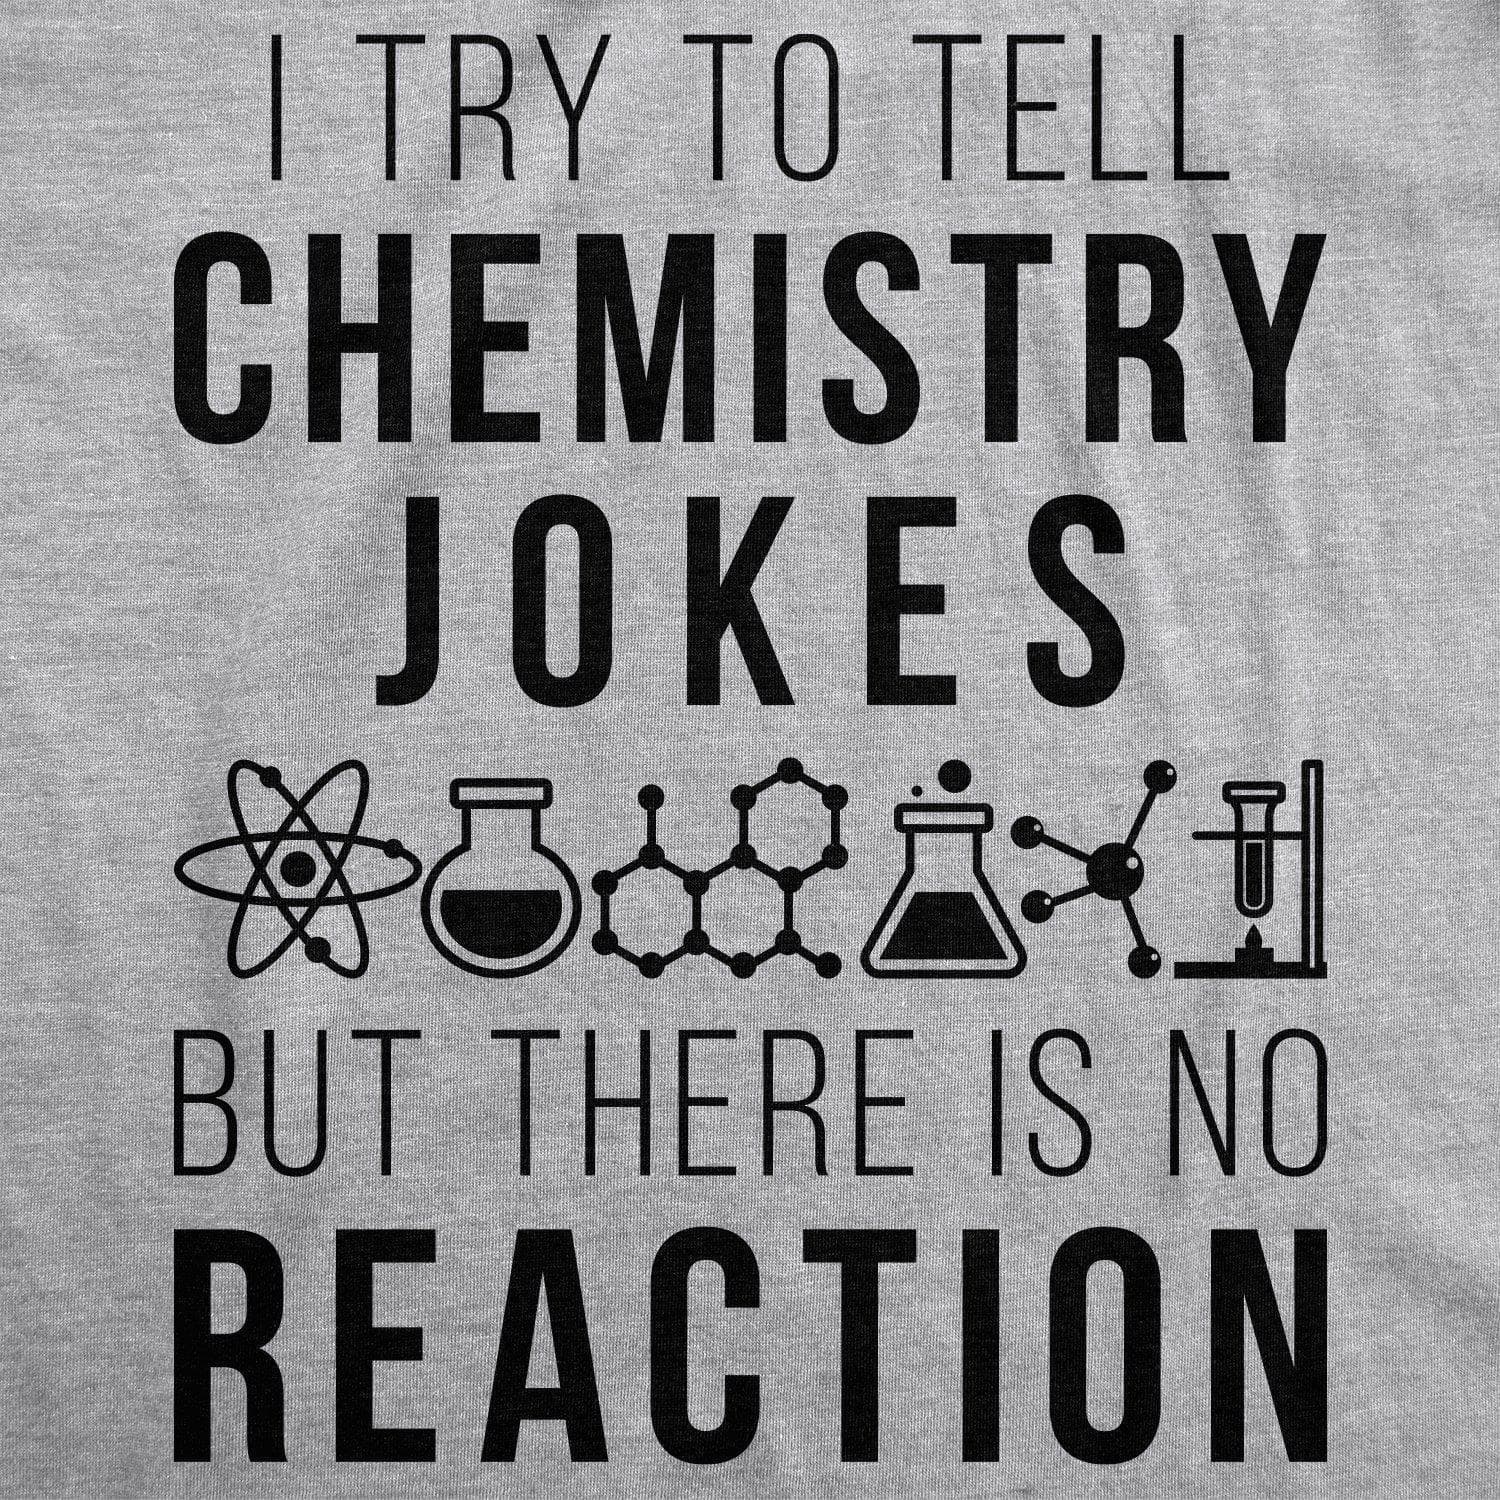 I Try To Tell Chemistry Jokes Men's Tshirt  -  Crazy Dog T-Shirts